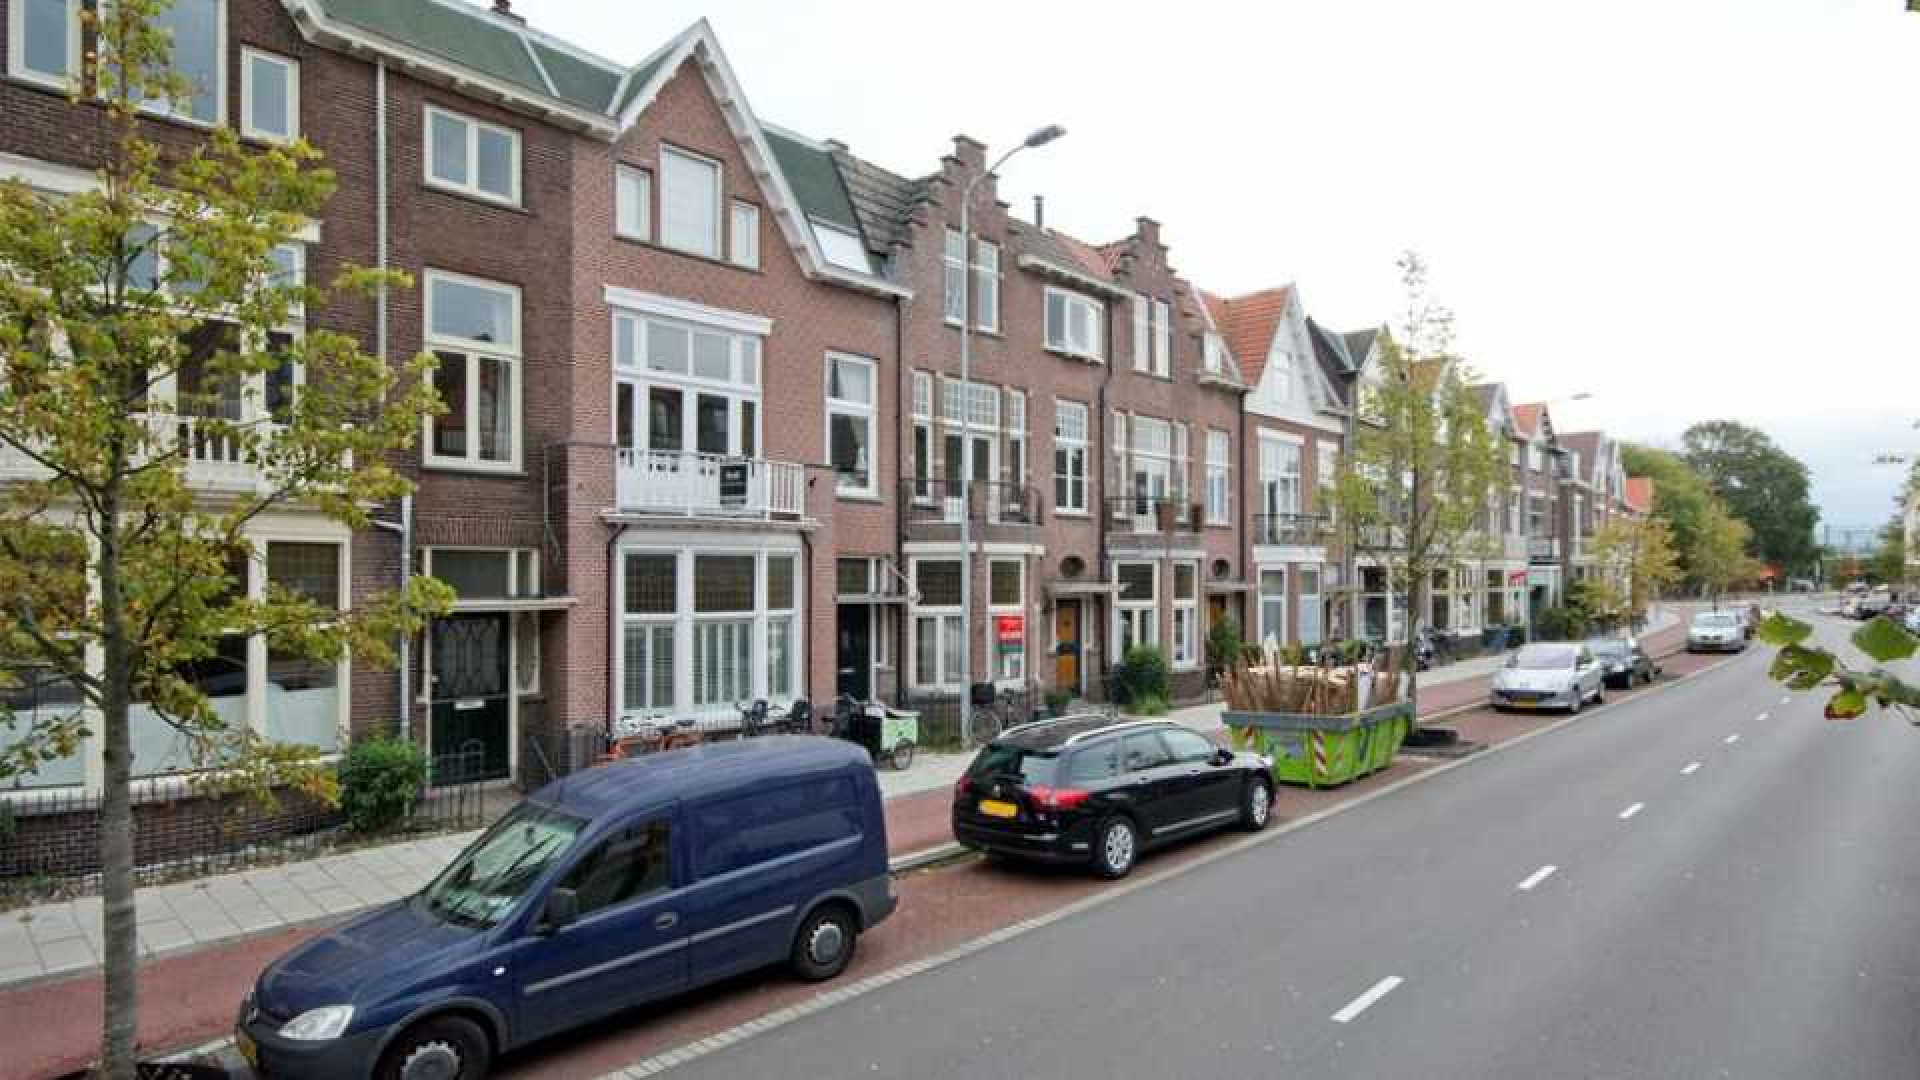 Familie zet huis Joost Zwagerman te koop. Zie foto's 19